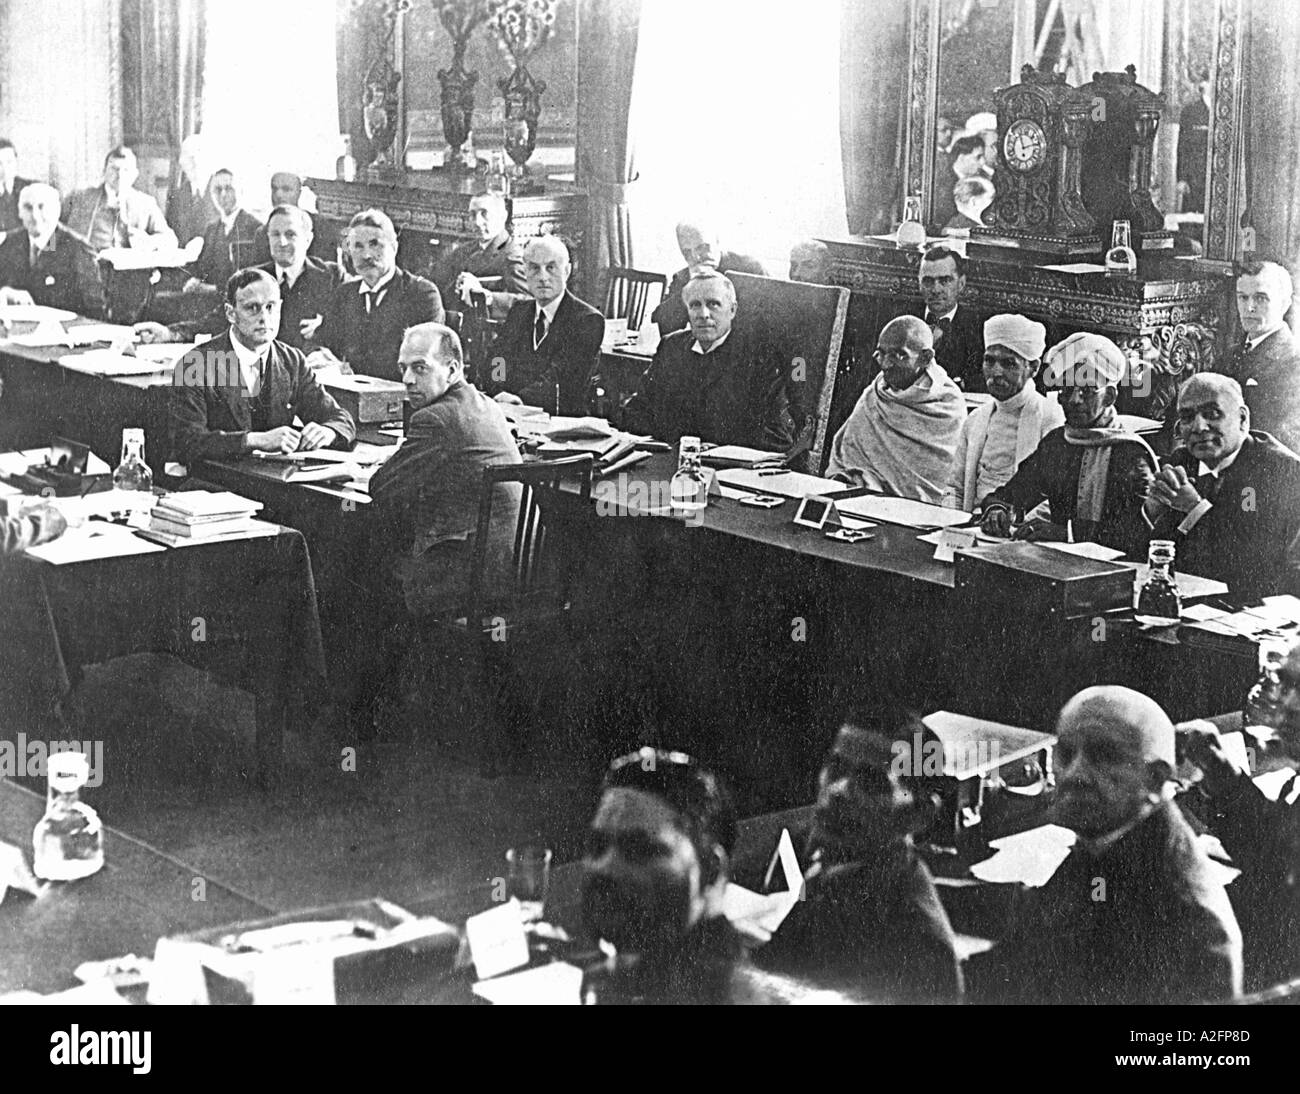 Mahatma Gandhi lors de la deuxième Conférence de la Table ronde à Londres Angleterre Royaume-Uni novembre 1931 ancienne image millésime 1900 Banque D'Images